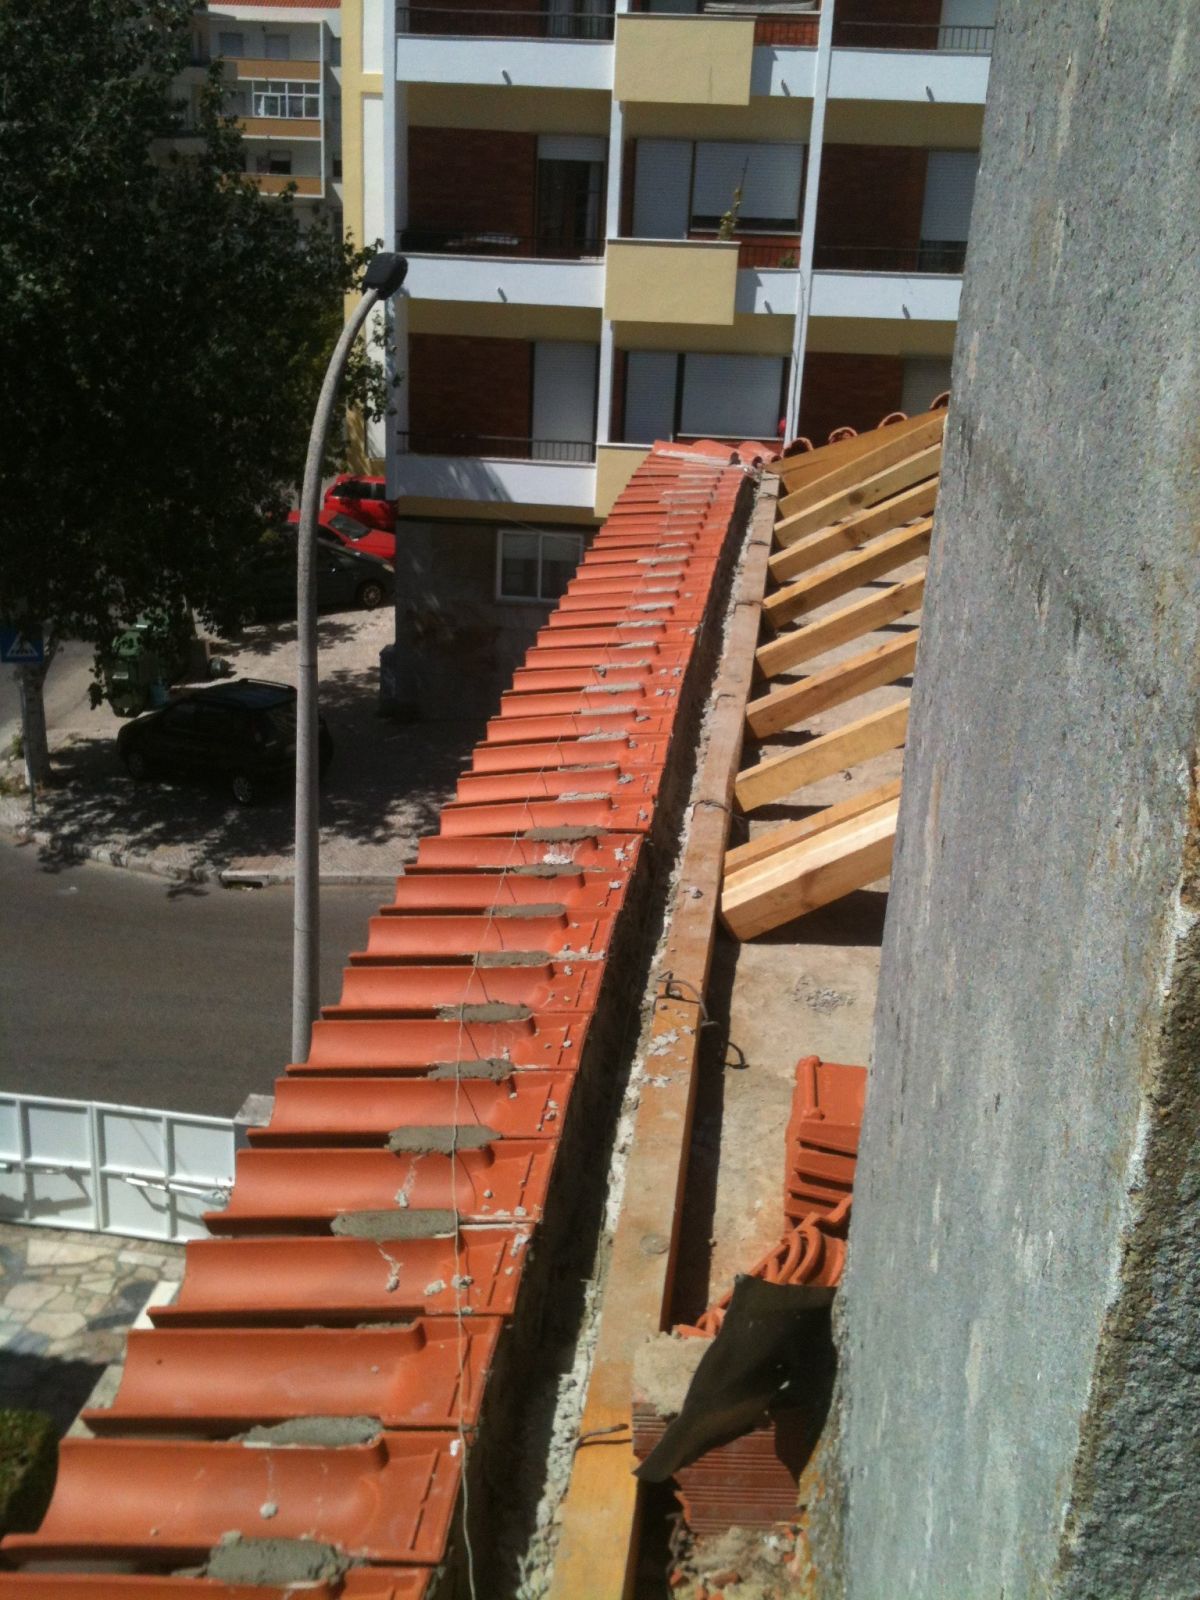 PauloLopesServiços - Grândola - Instalação de Pavimento em Pedra ou Ladrilho